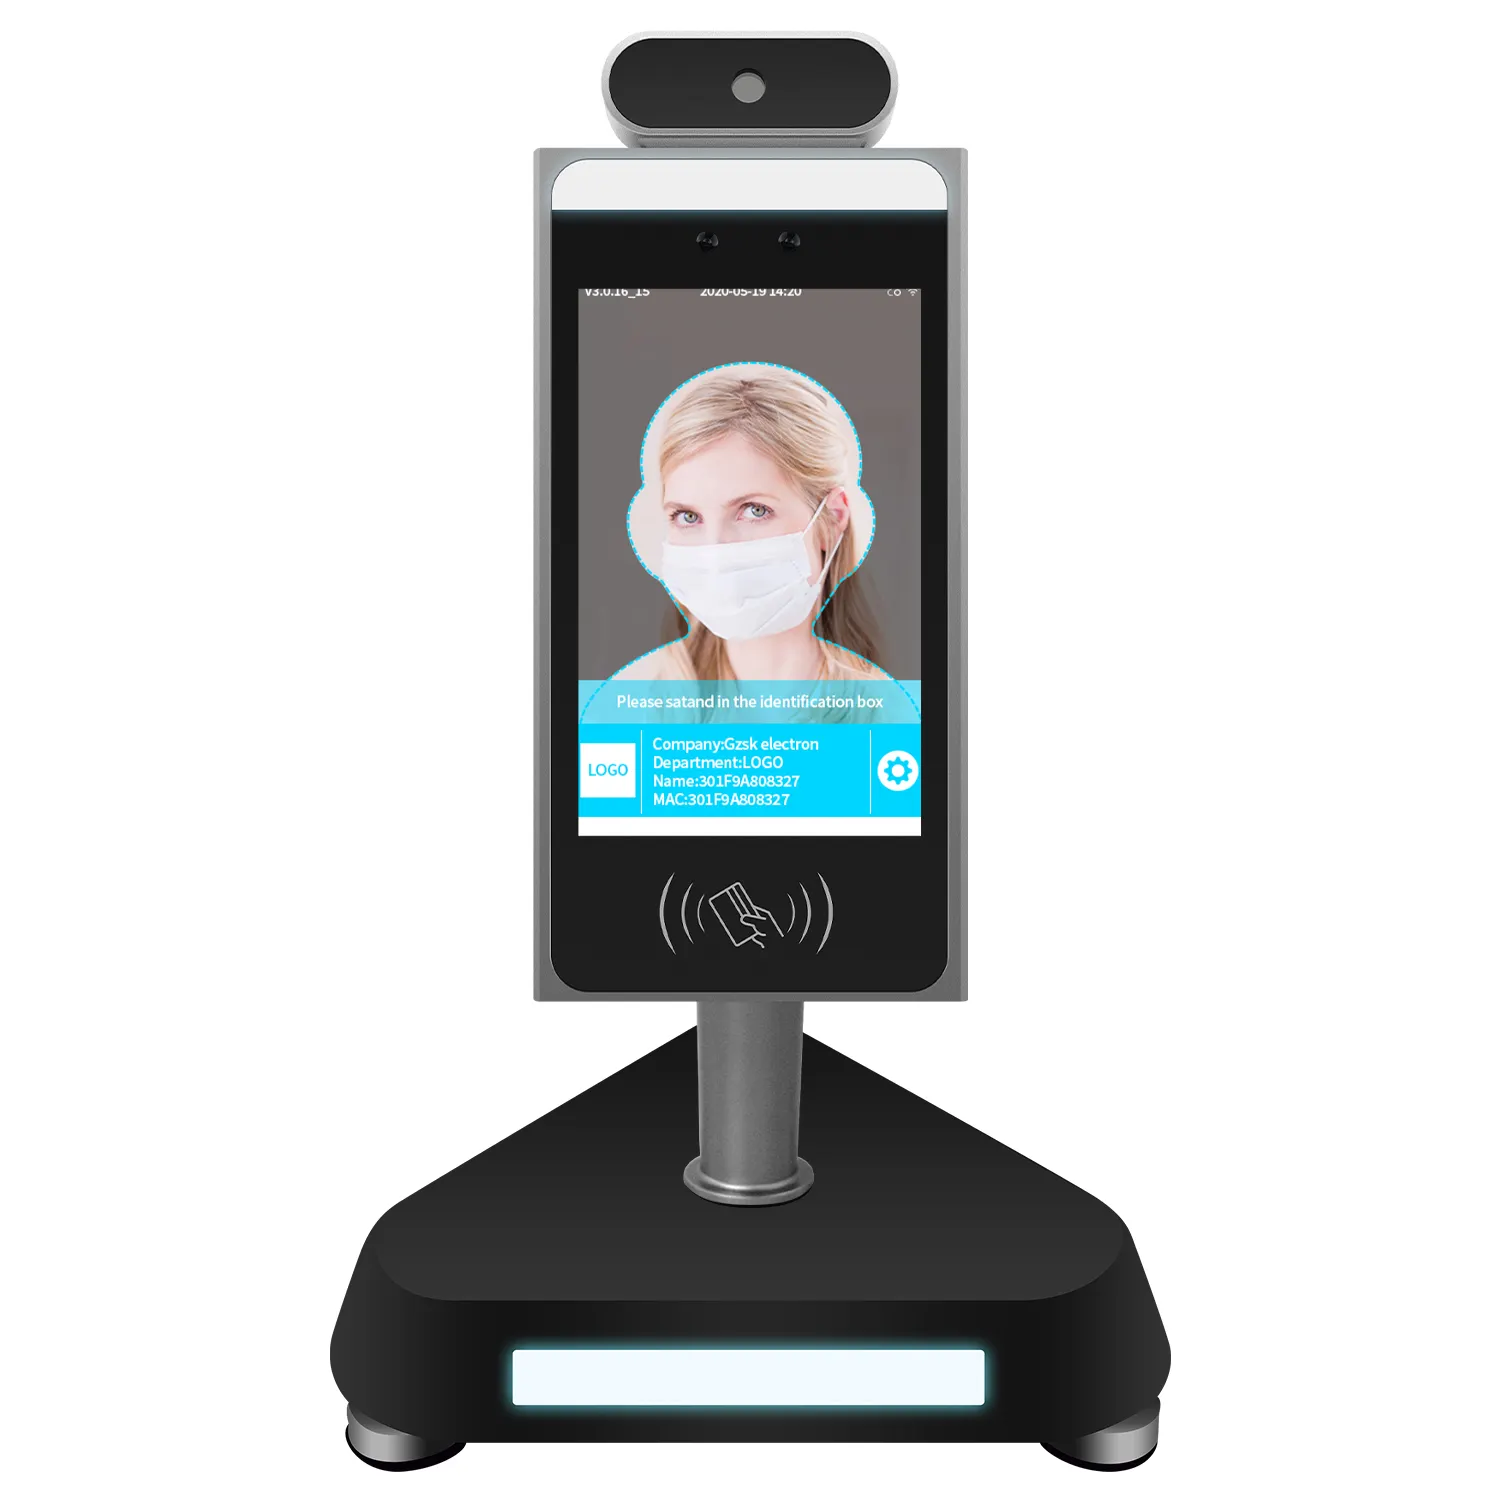 Cámara térmica con reconocimiento facial, dispositivo de detección biométrica de temperatura corporal, 0.5s, android cloud, novedad